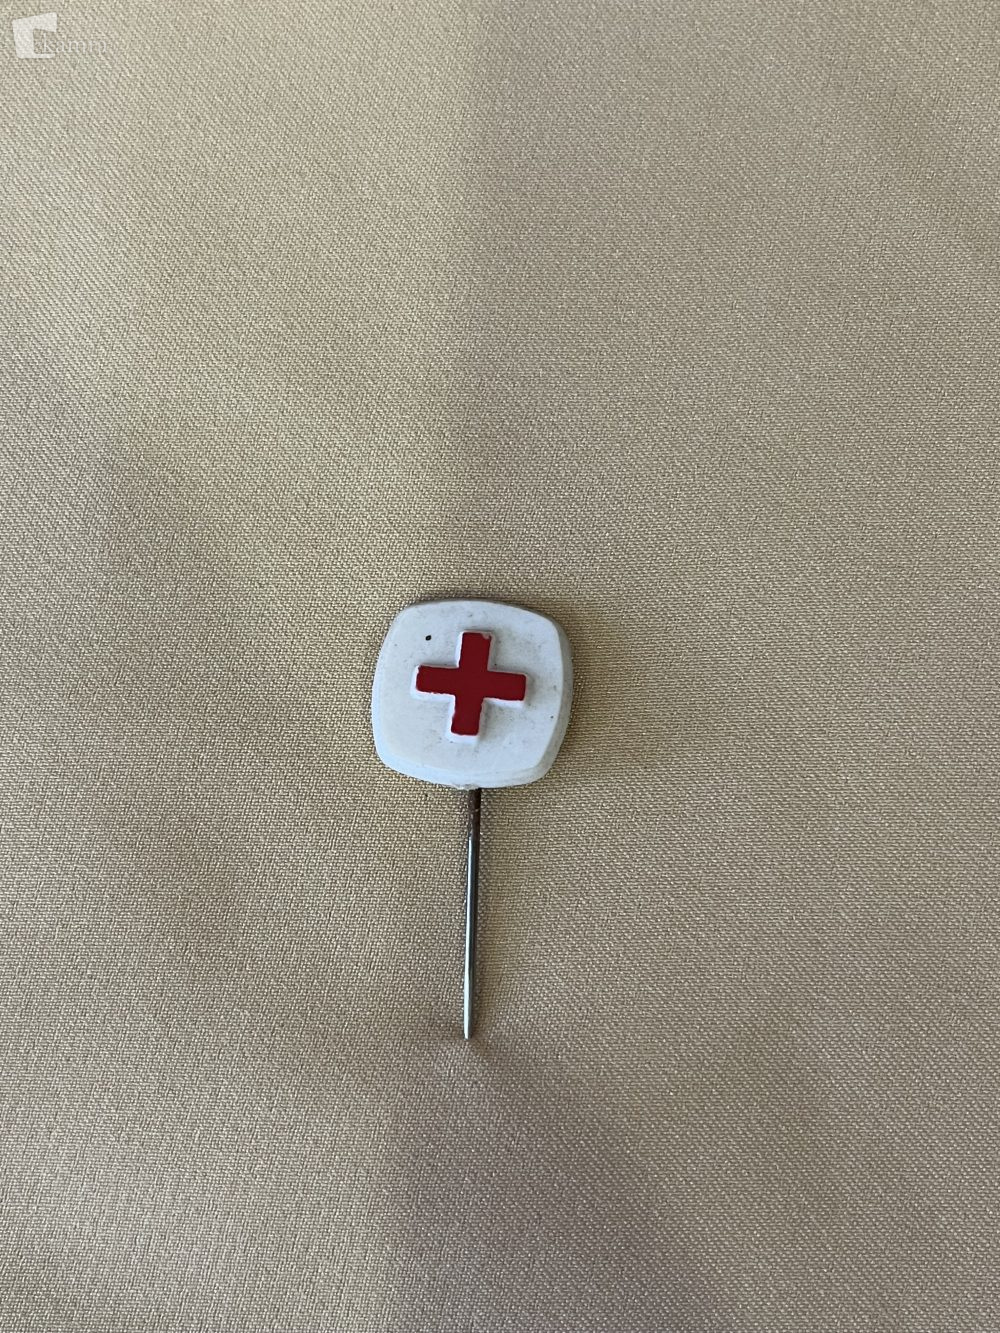 1. Rdeči križ je mednarodna organizacija, ki je bila ustanovljena 23. oktobra 1863 v Ženevi, ko so se srečali predstavniki 16 držav in na pobudo Jeana Henrija Dunanta ustanovili človekoljubno organizacijo Mednarodni Rdeči križ.